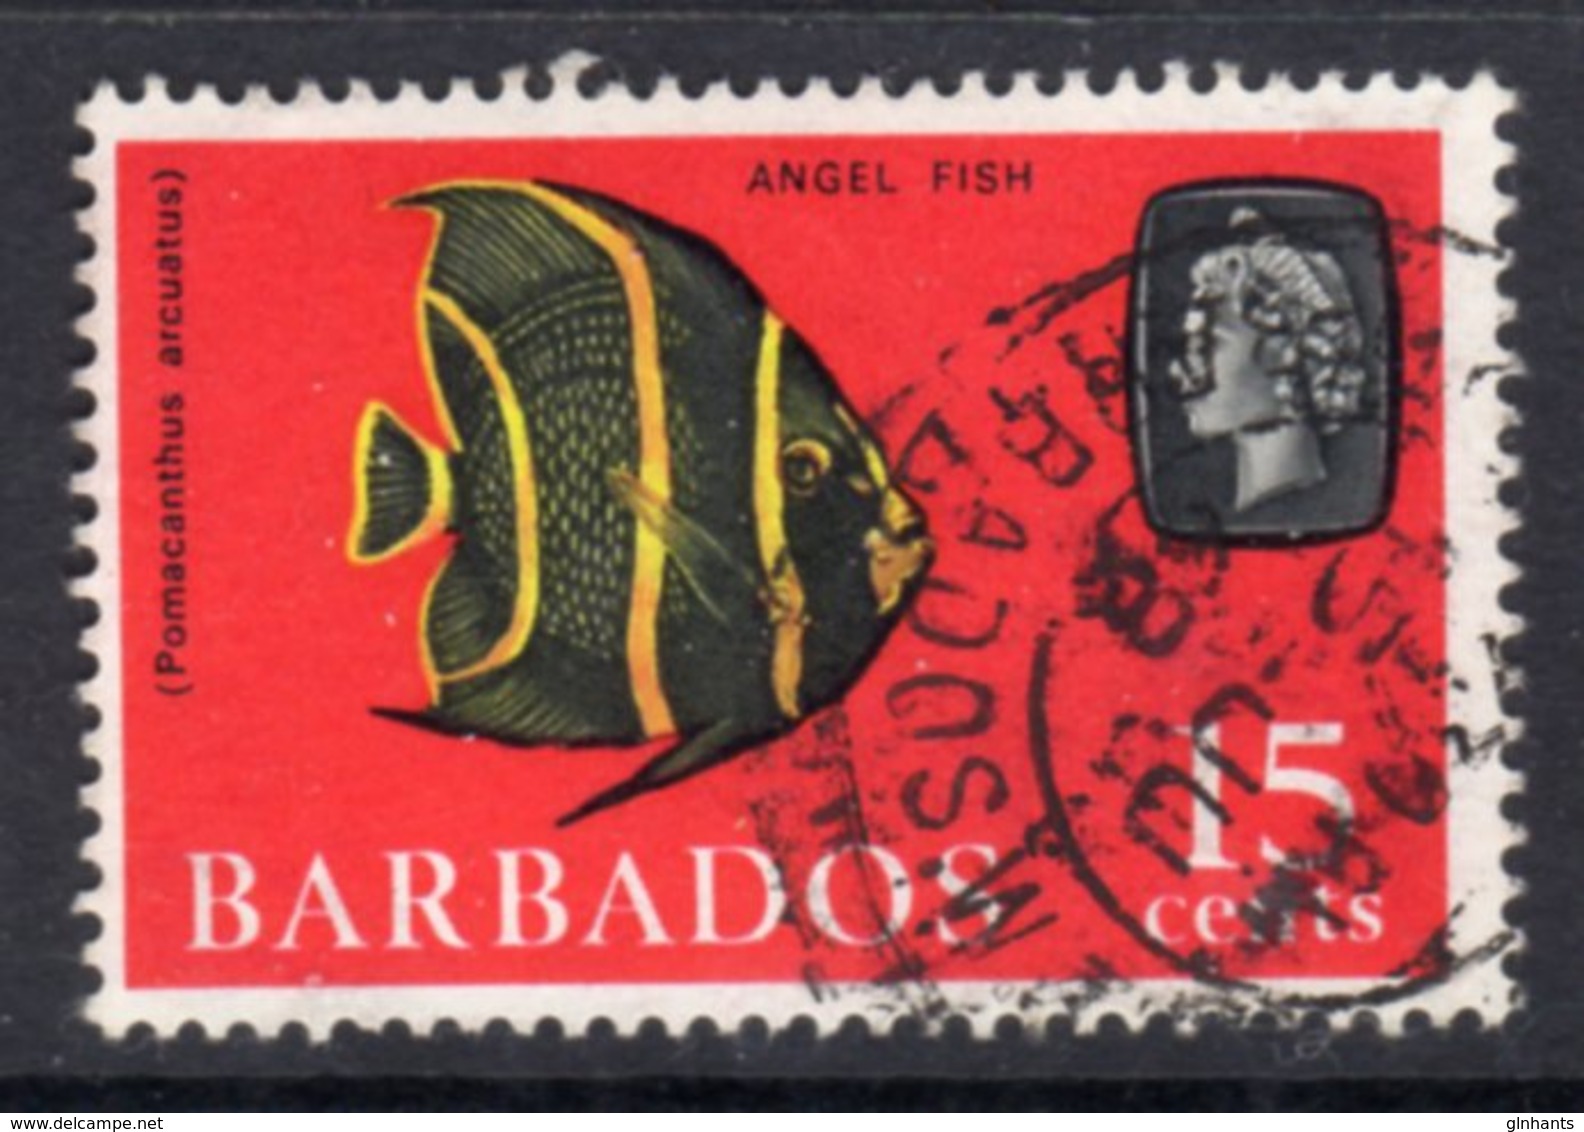 BARBADOS - 1966 15c DEFINITIVE STAMP WMK W12 SIDEWAYS REF B USED SG 350 - Barbados (...-1966)